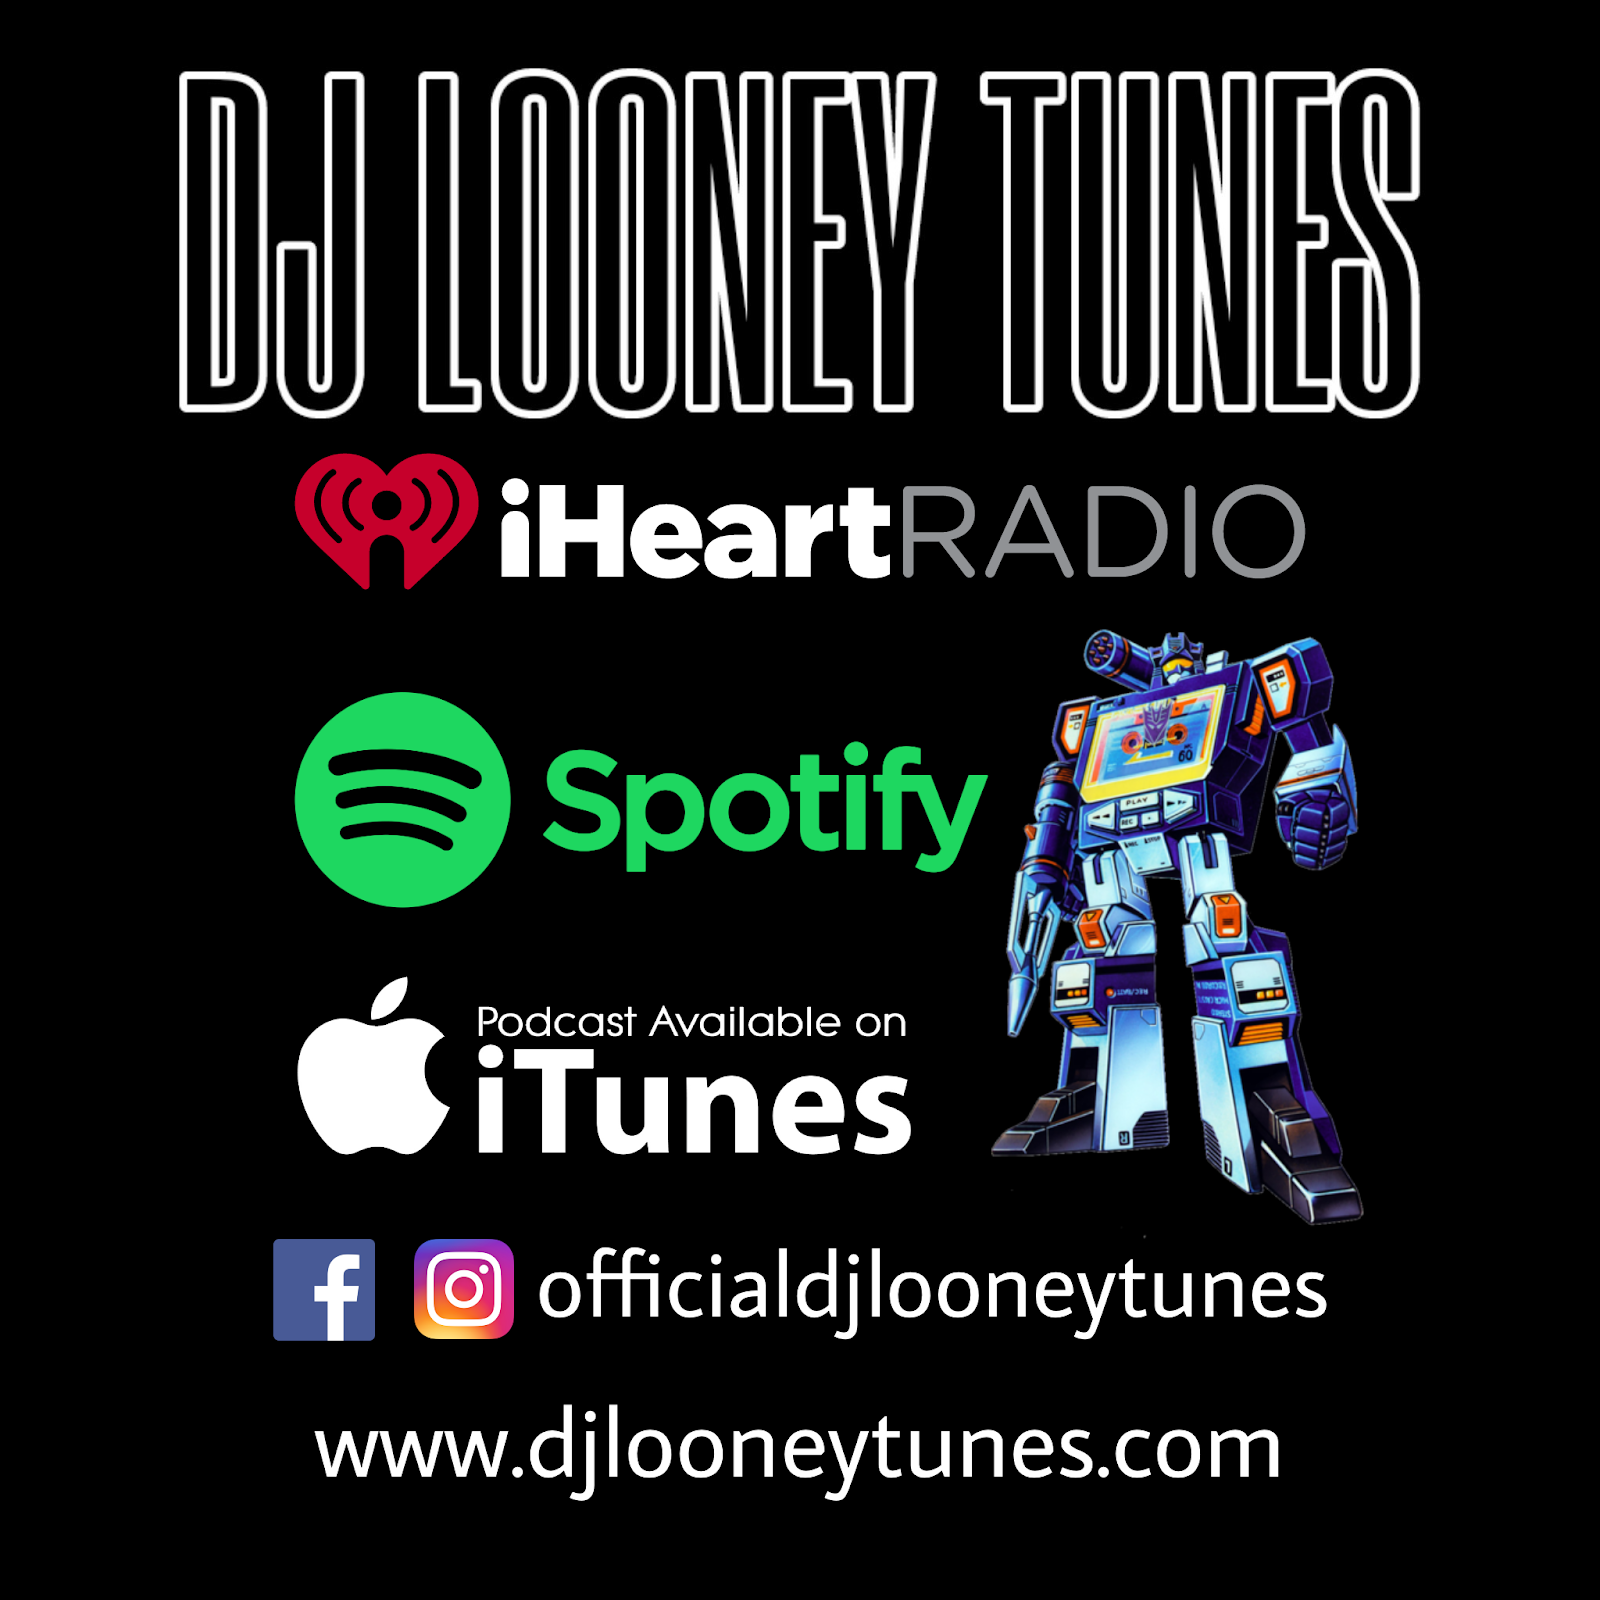 DJ LOONEY TUNES